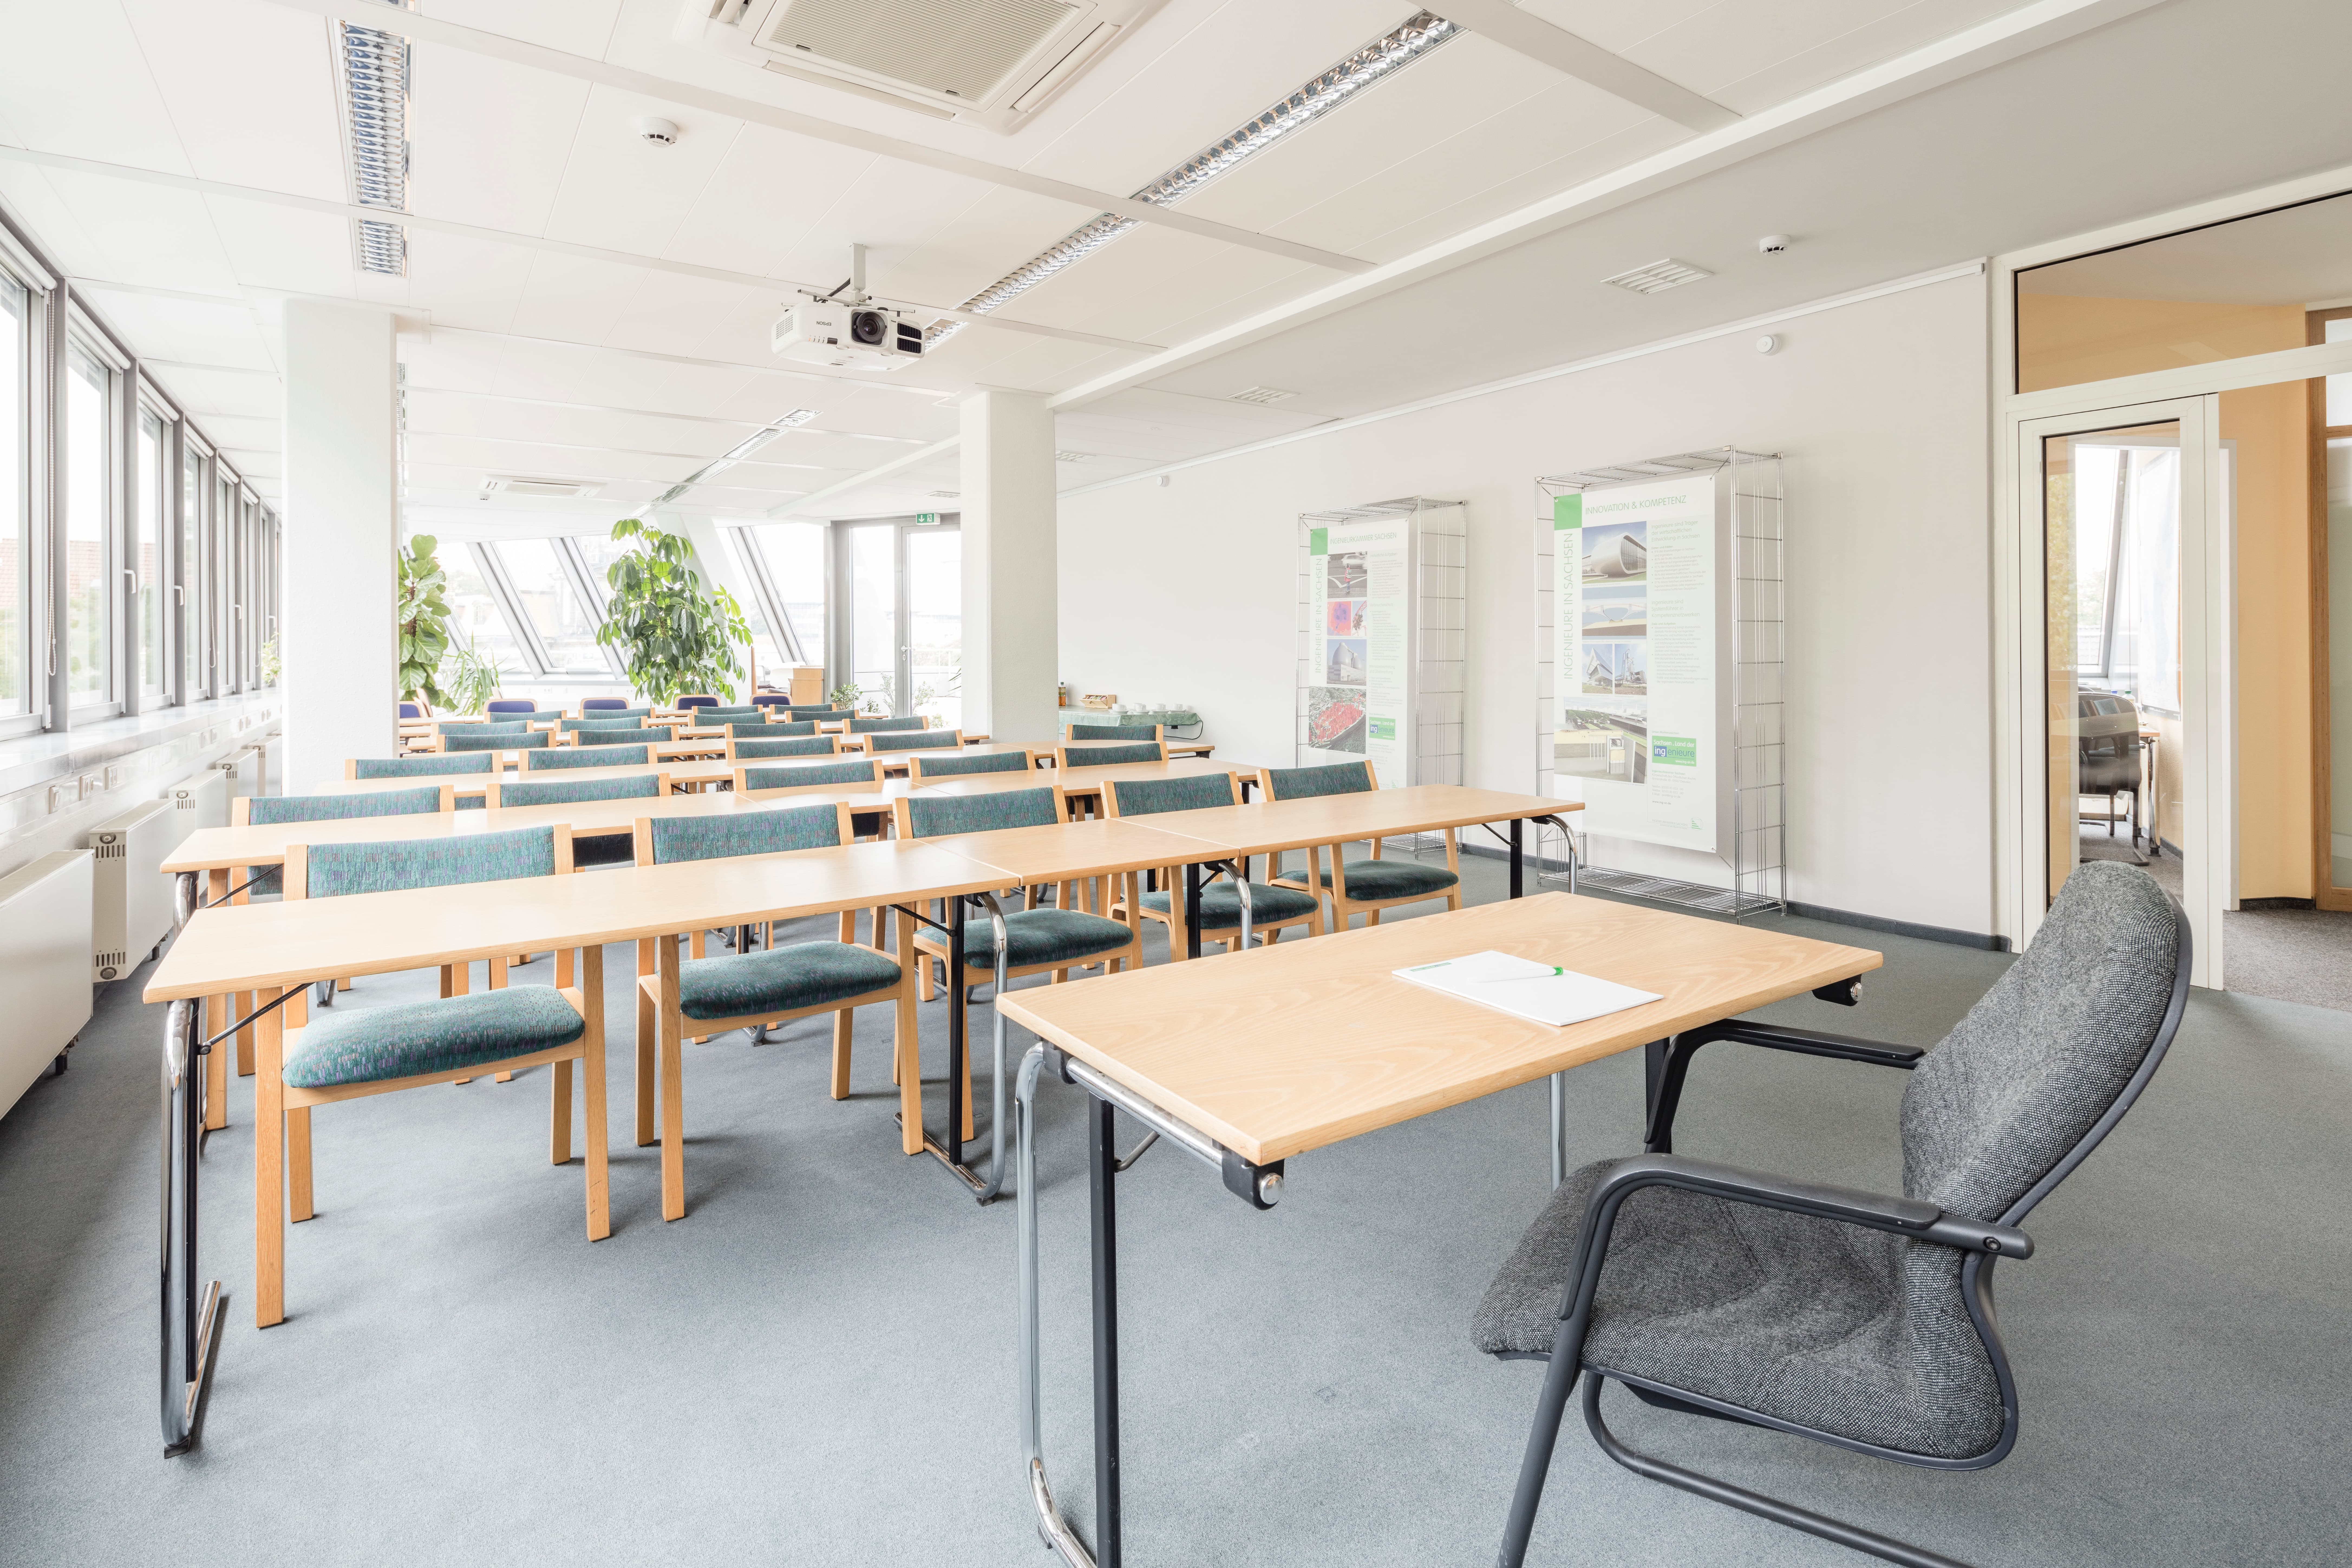 Modern green classroom